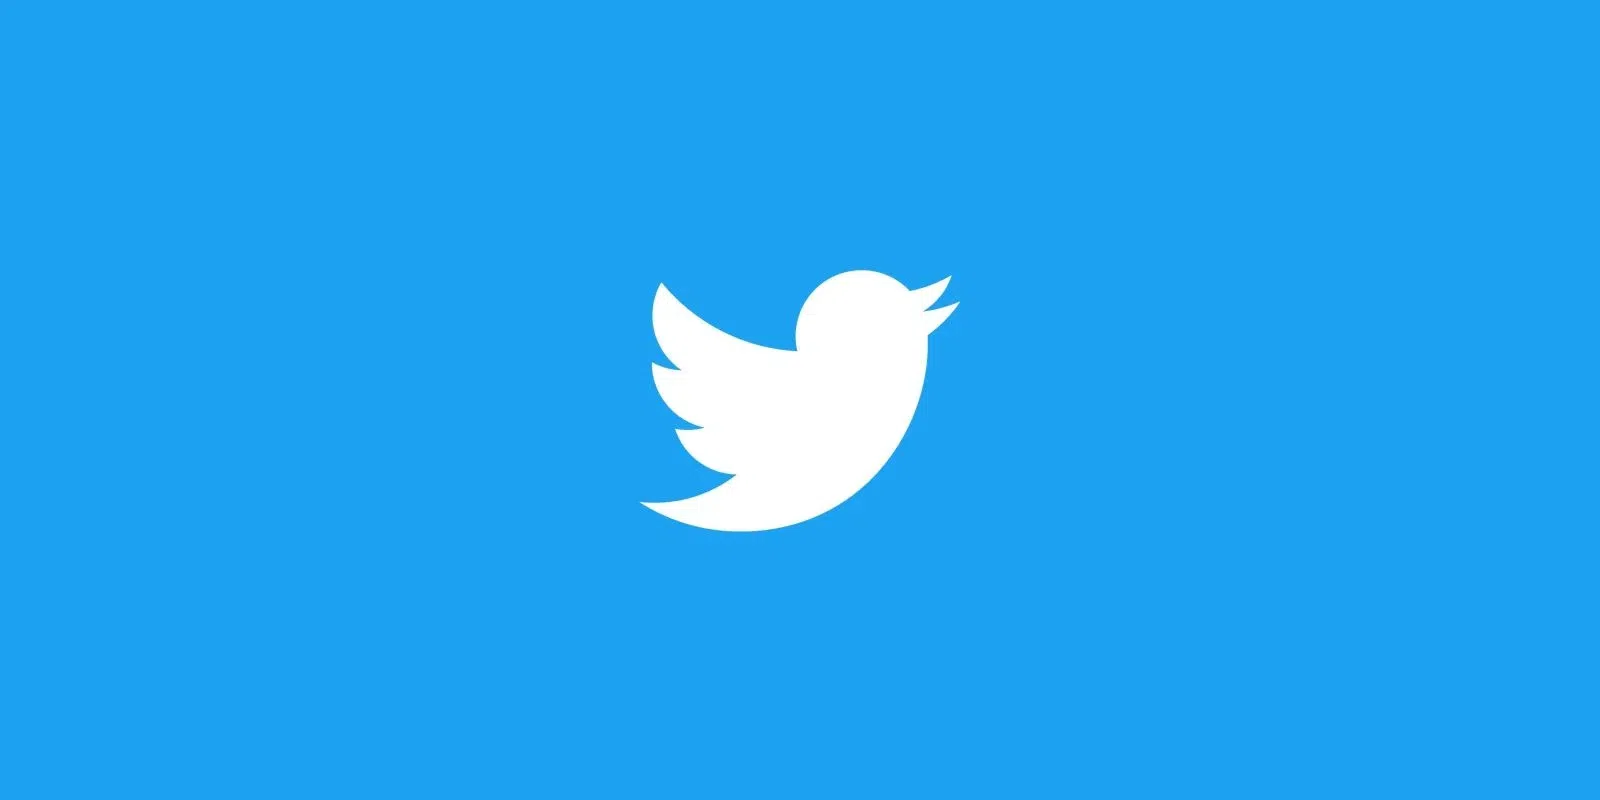 ¿Cómo triunfar en Twitter? Los 5 consejos esenciales